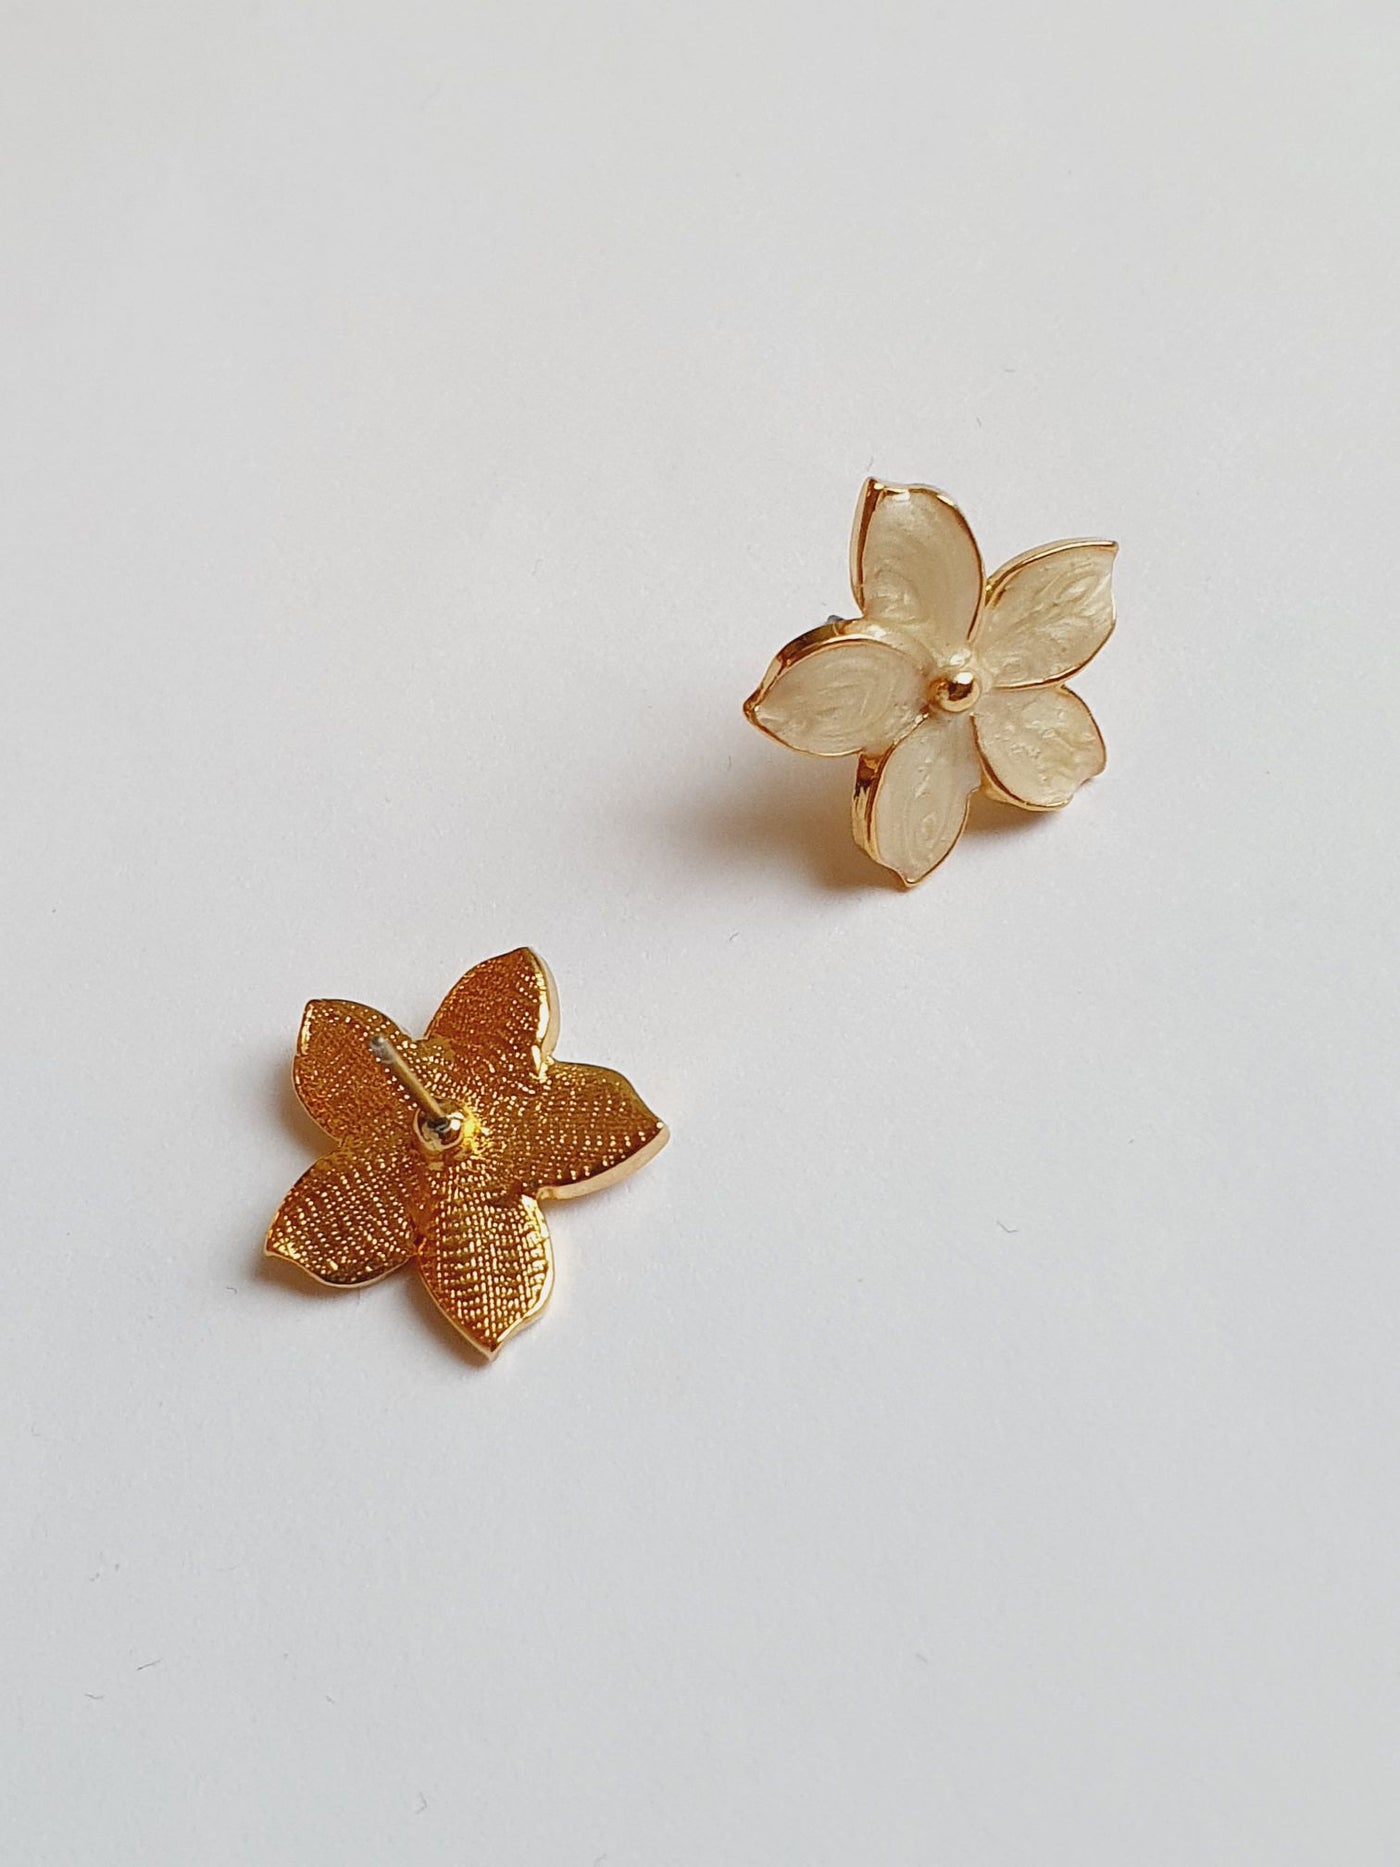 Vintage Gold Plated Flower Stud Earrings